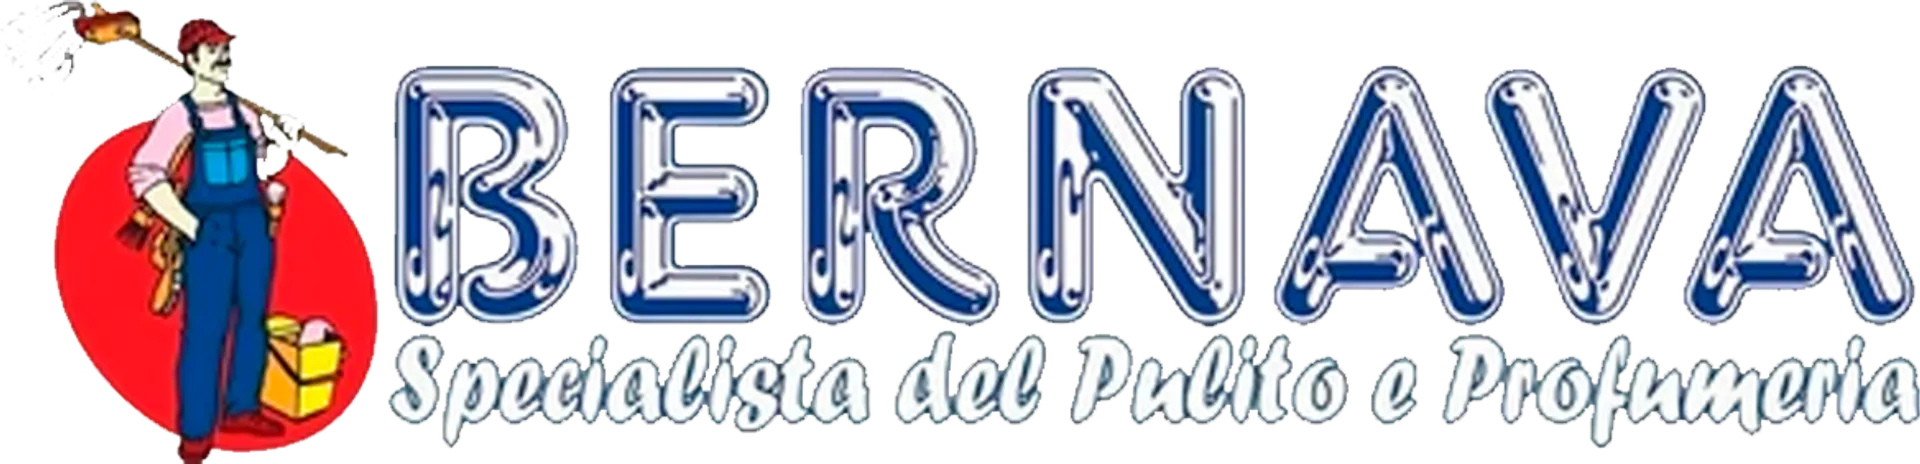 BERNAVA logo